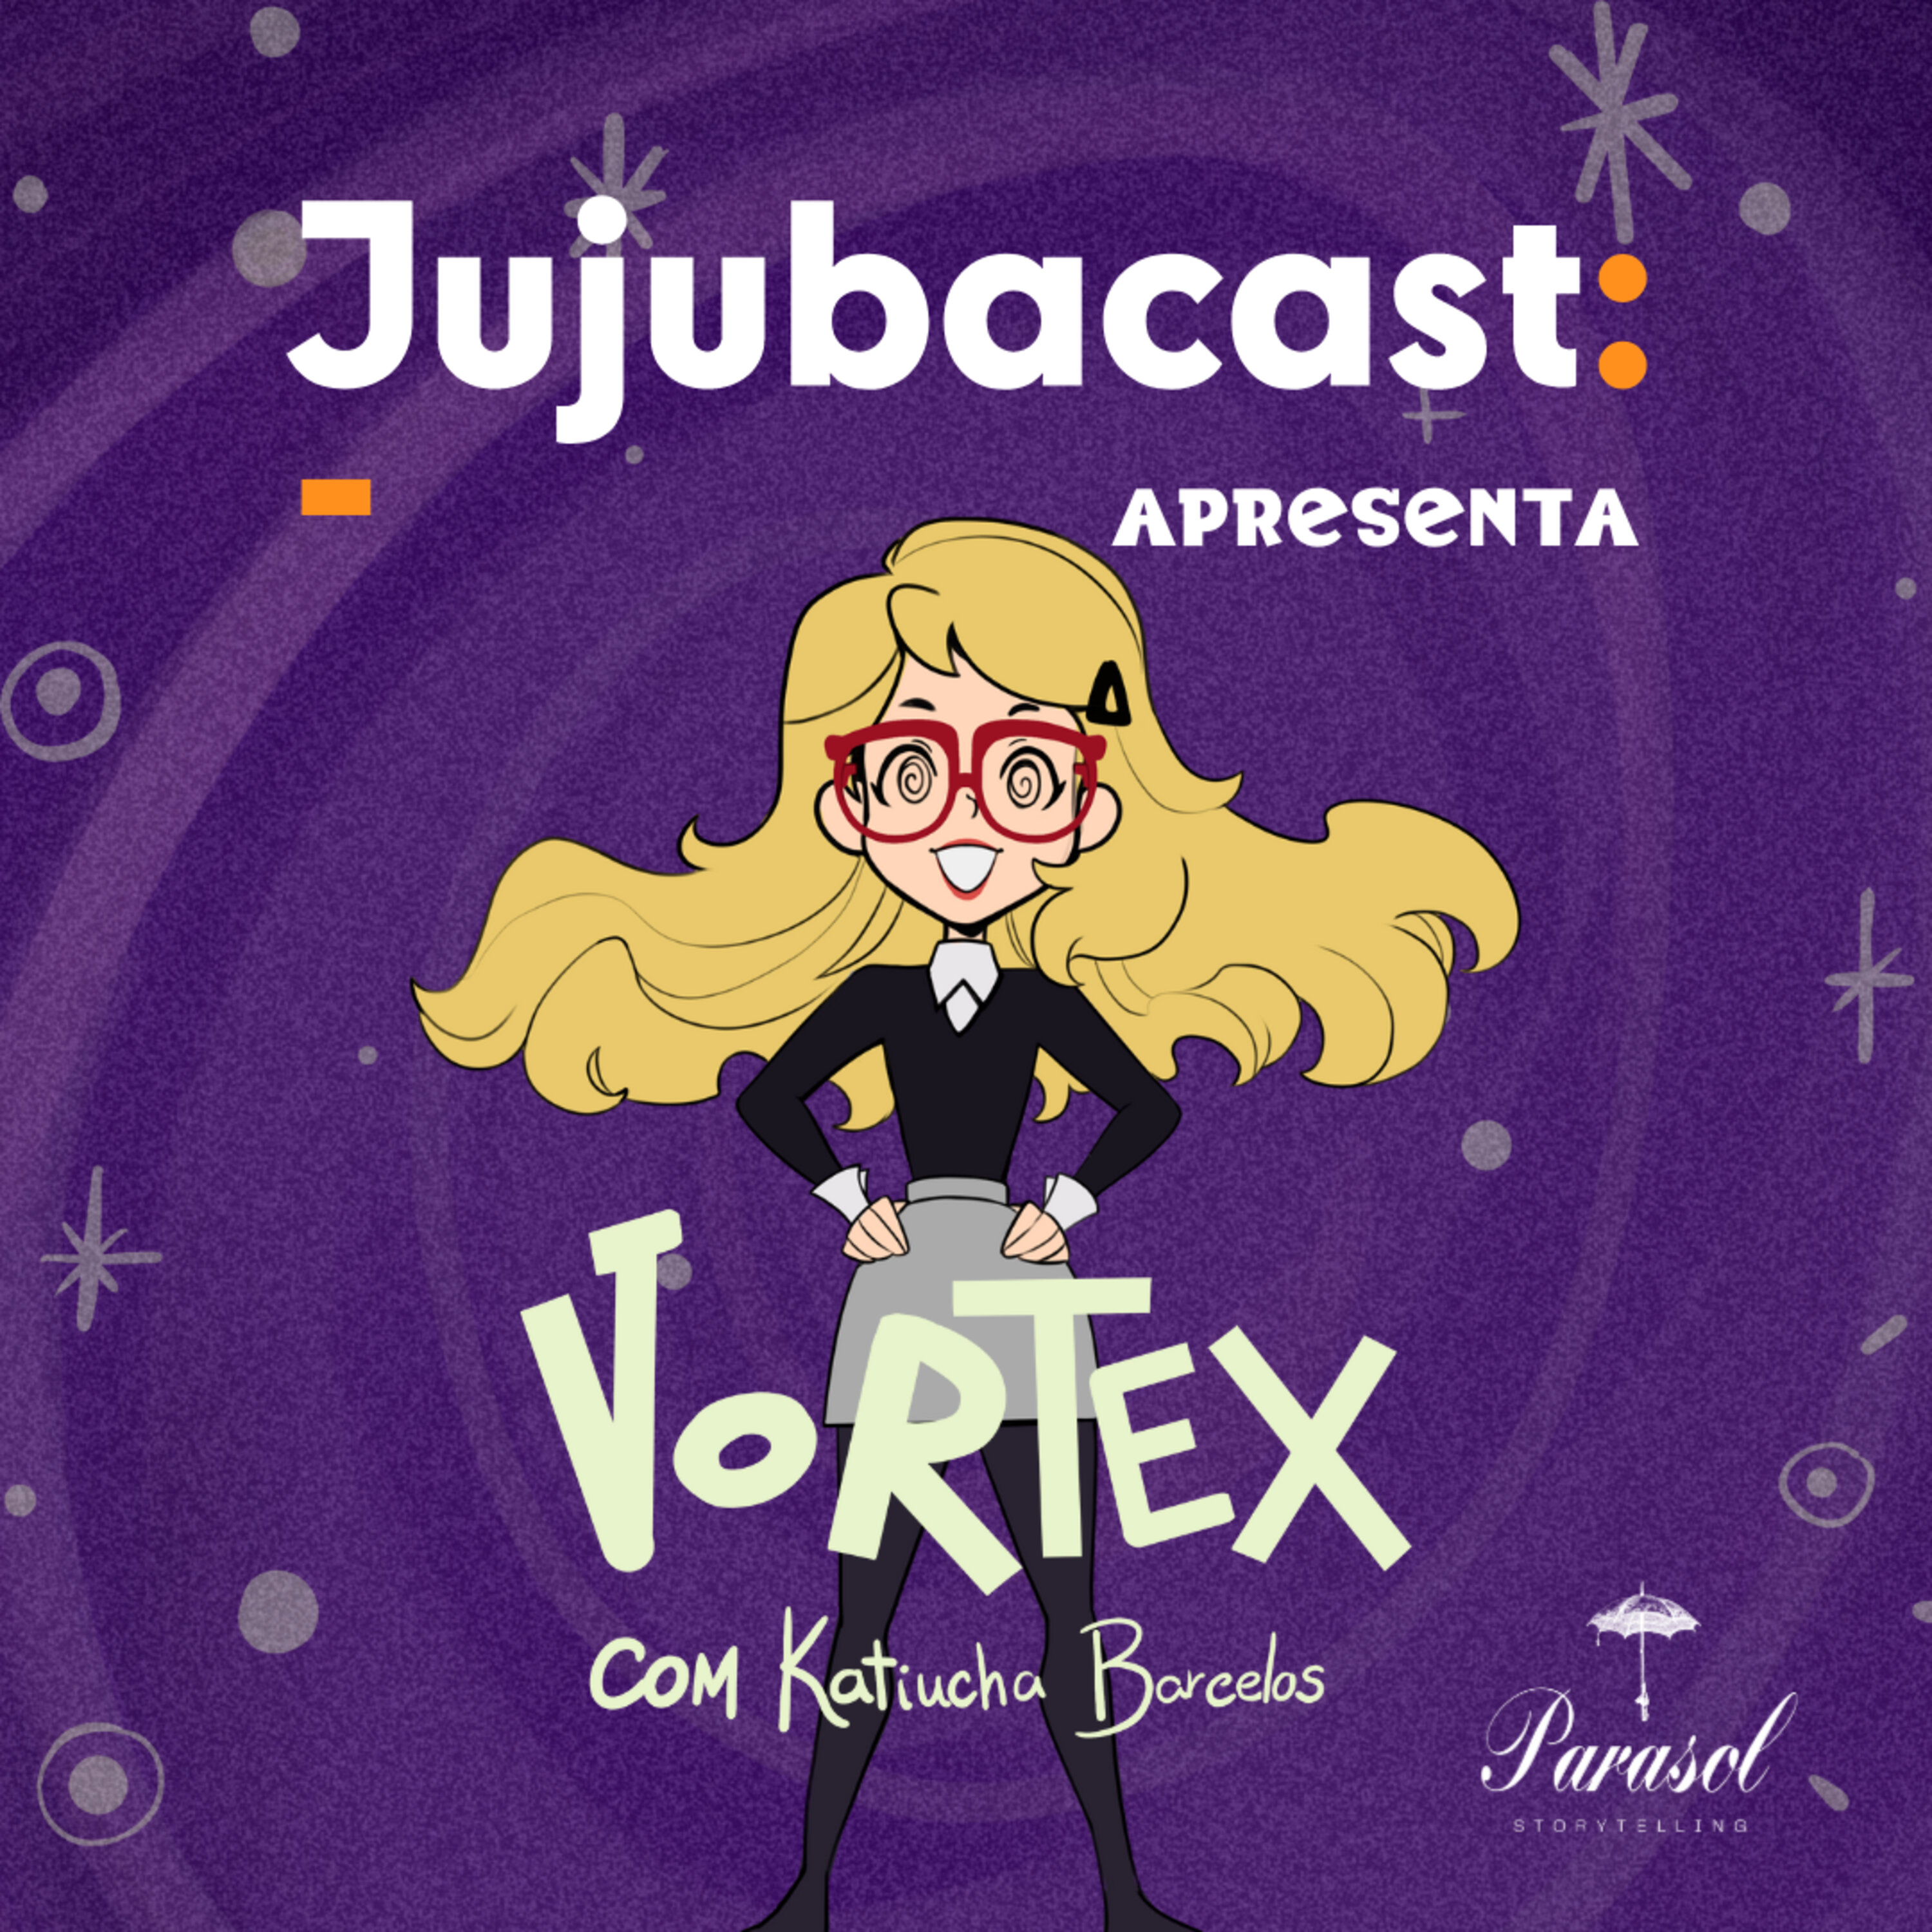 Jujubacast Apresenta: Vortex Podcast